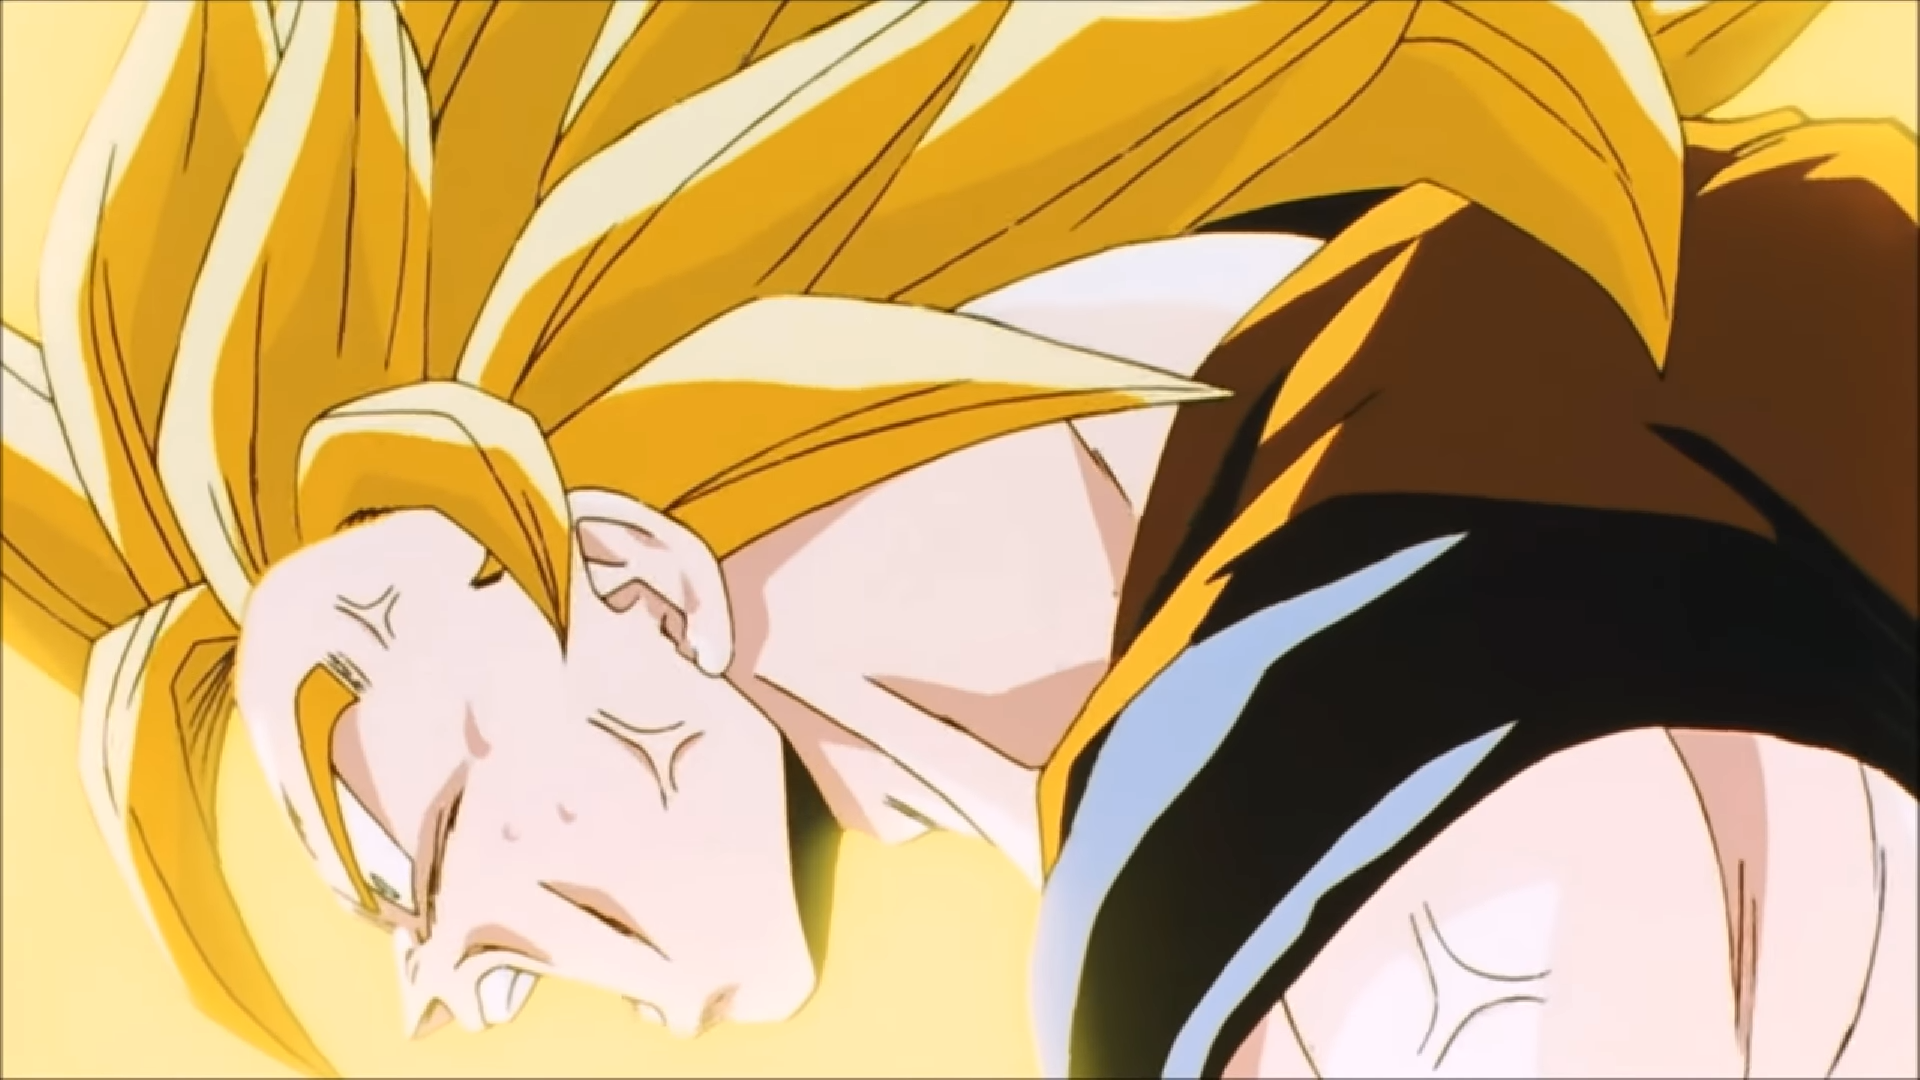 Son Goku Super Saiyan 3 (Buu Saga) (Manga), Myscaling Wiki